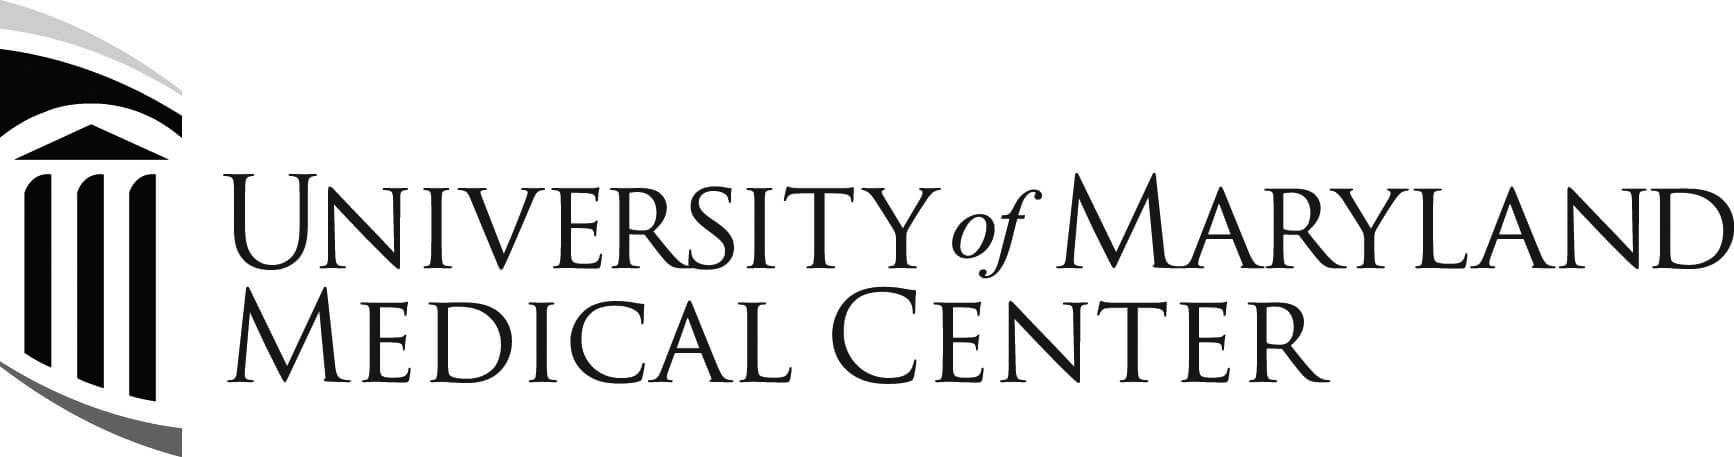 University of Maryland Medical Center